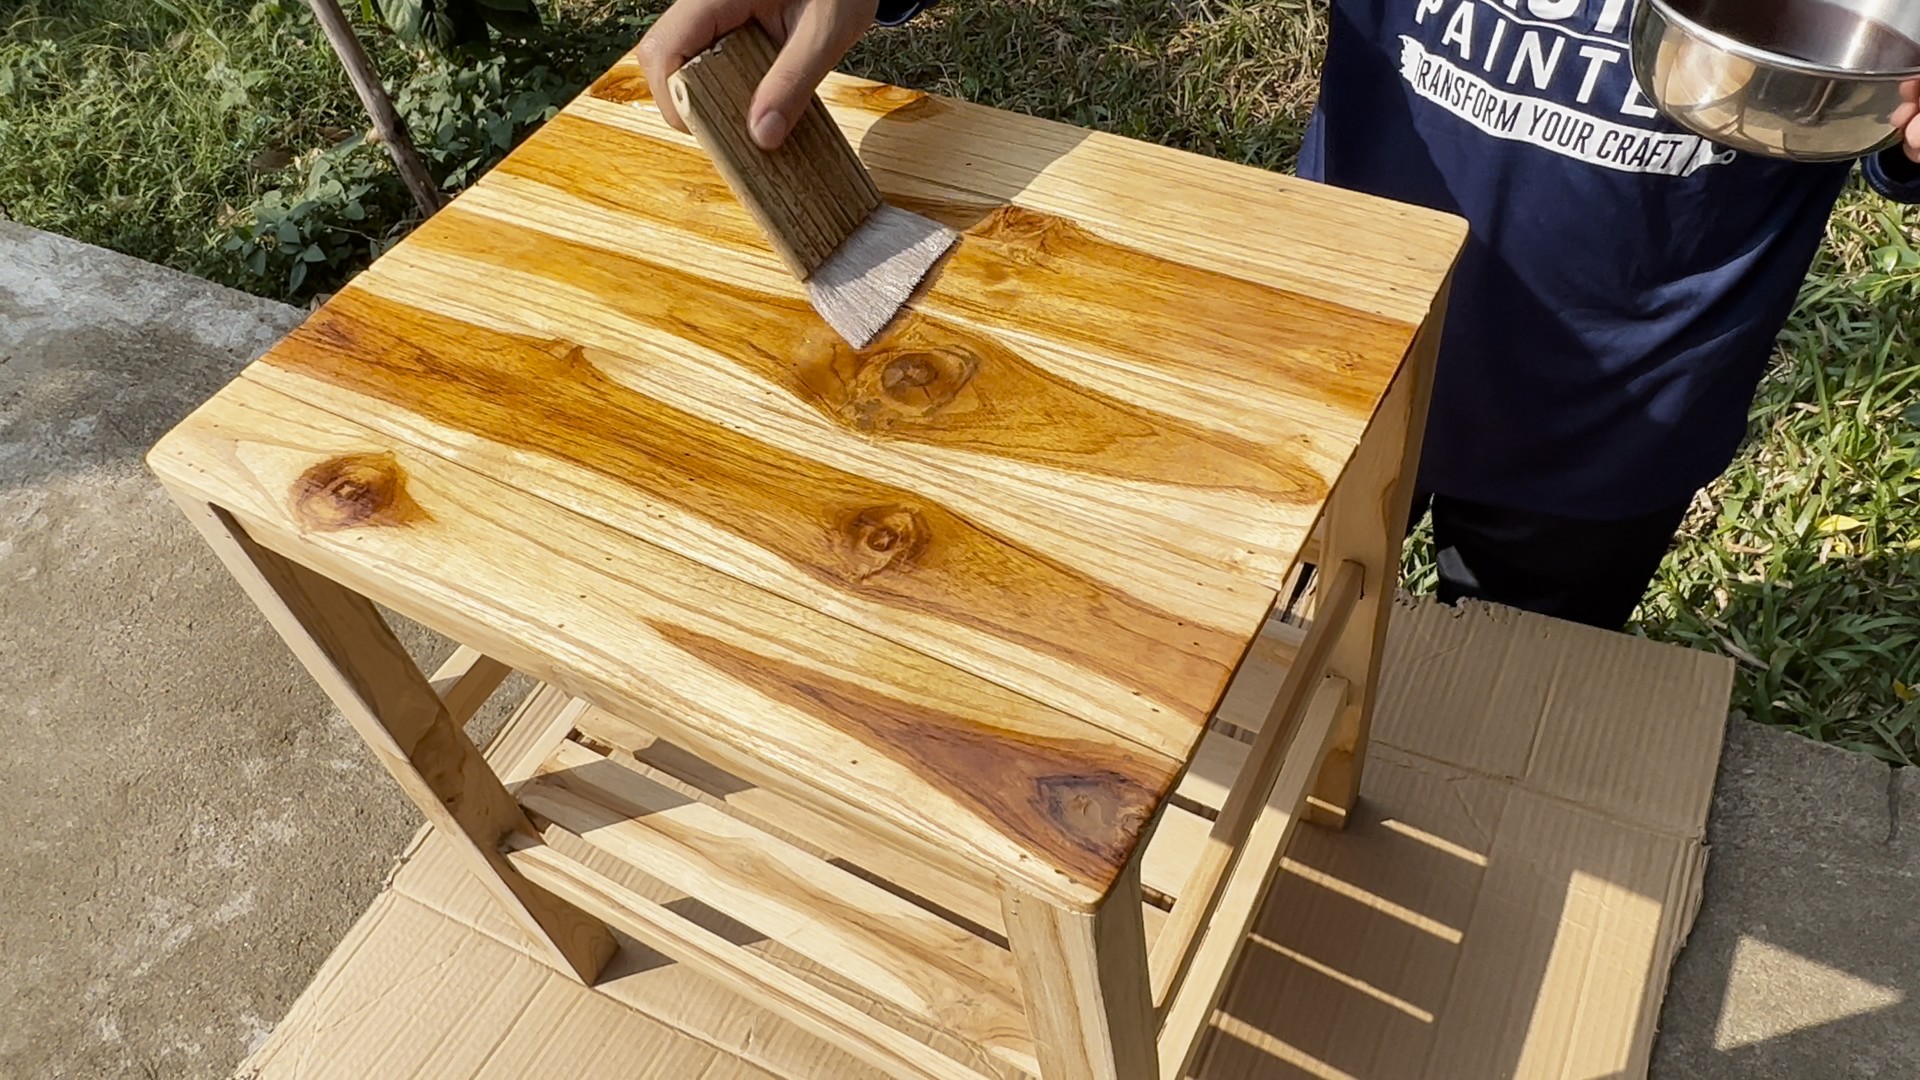 DIY. โต๊ะไม้วางของ ให้สวยเก๋ดูเป็นธรรมชาติ ด้วยสีย้อมไม้ เพียง 2 ขั้นตอนง่ายๆ